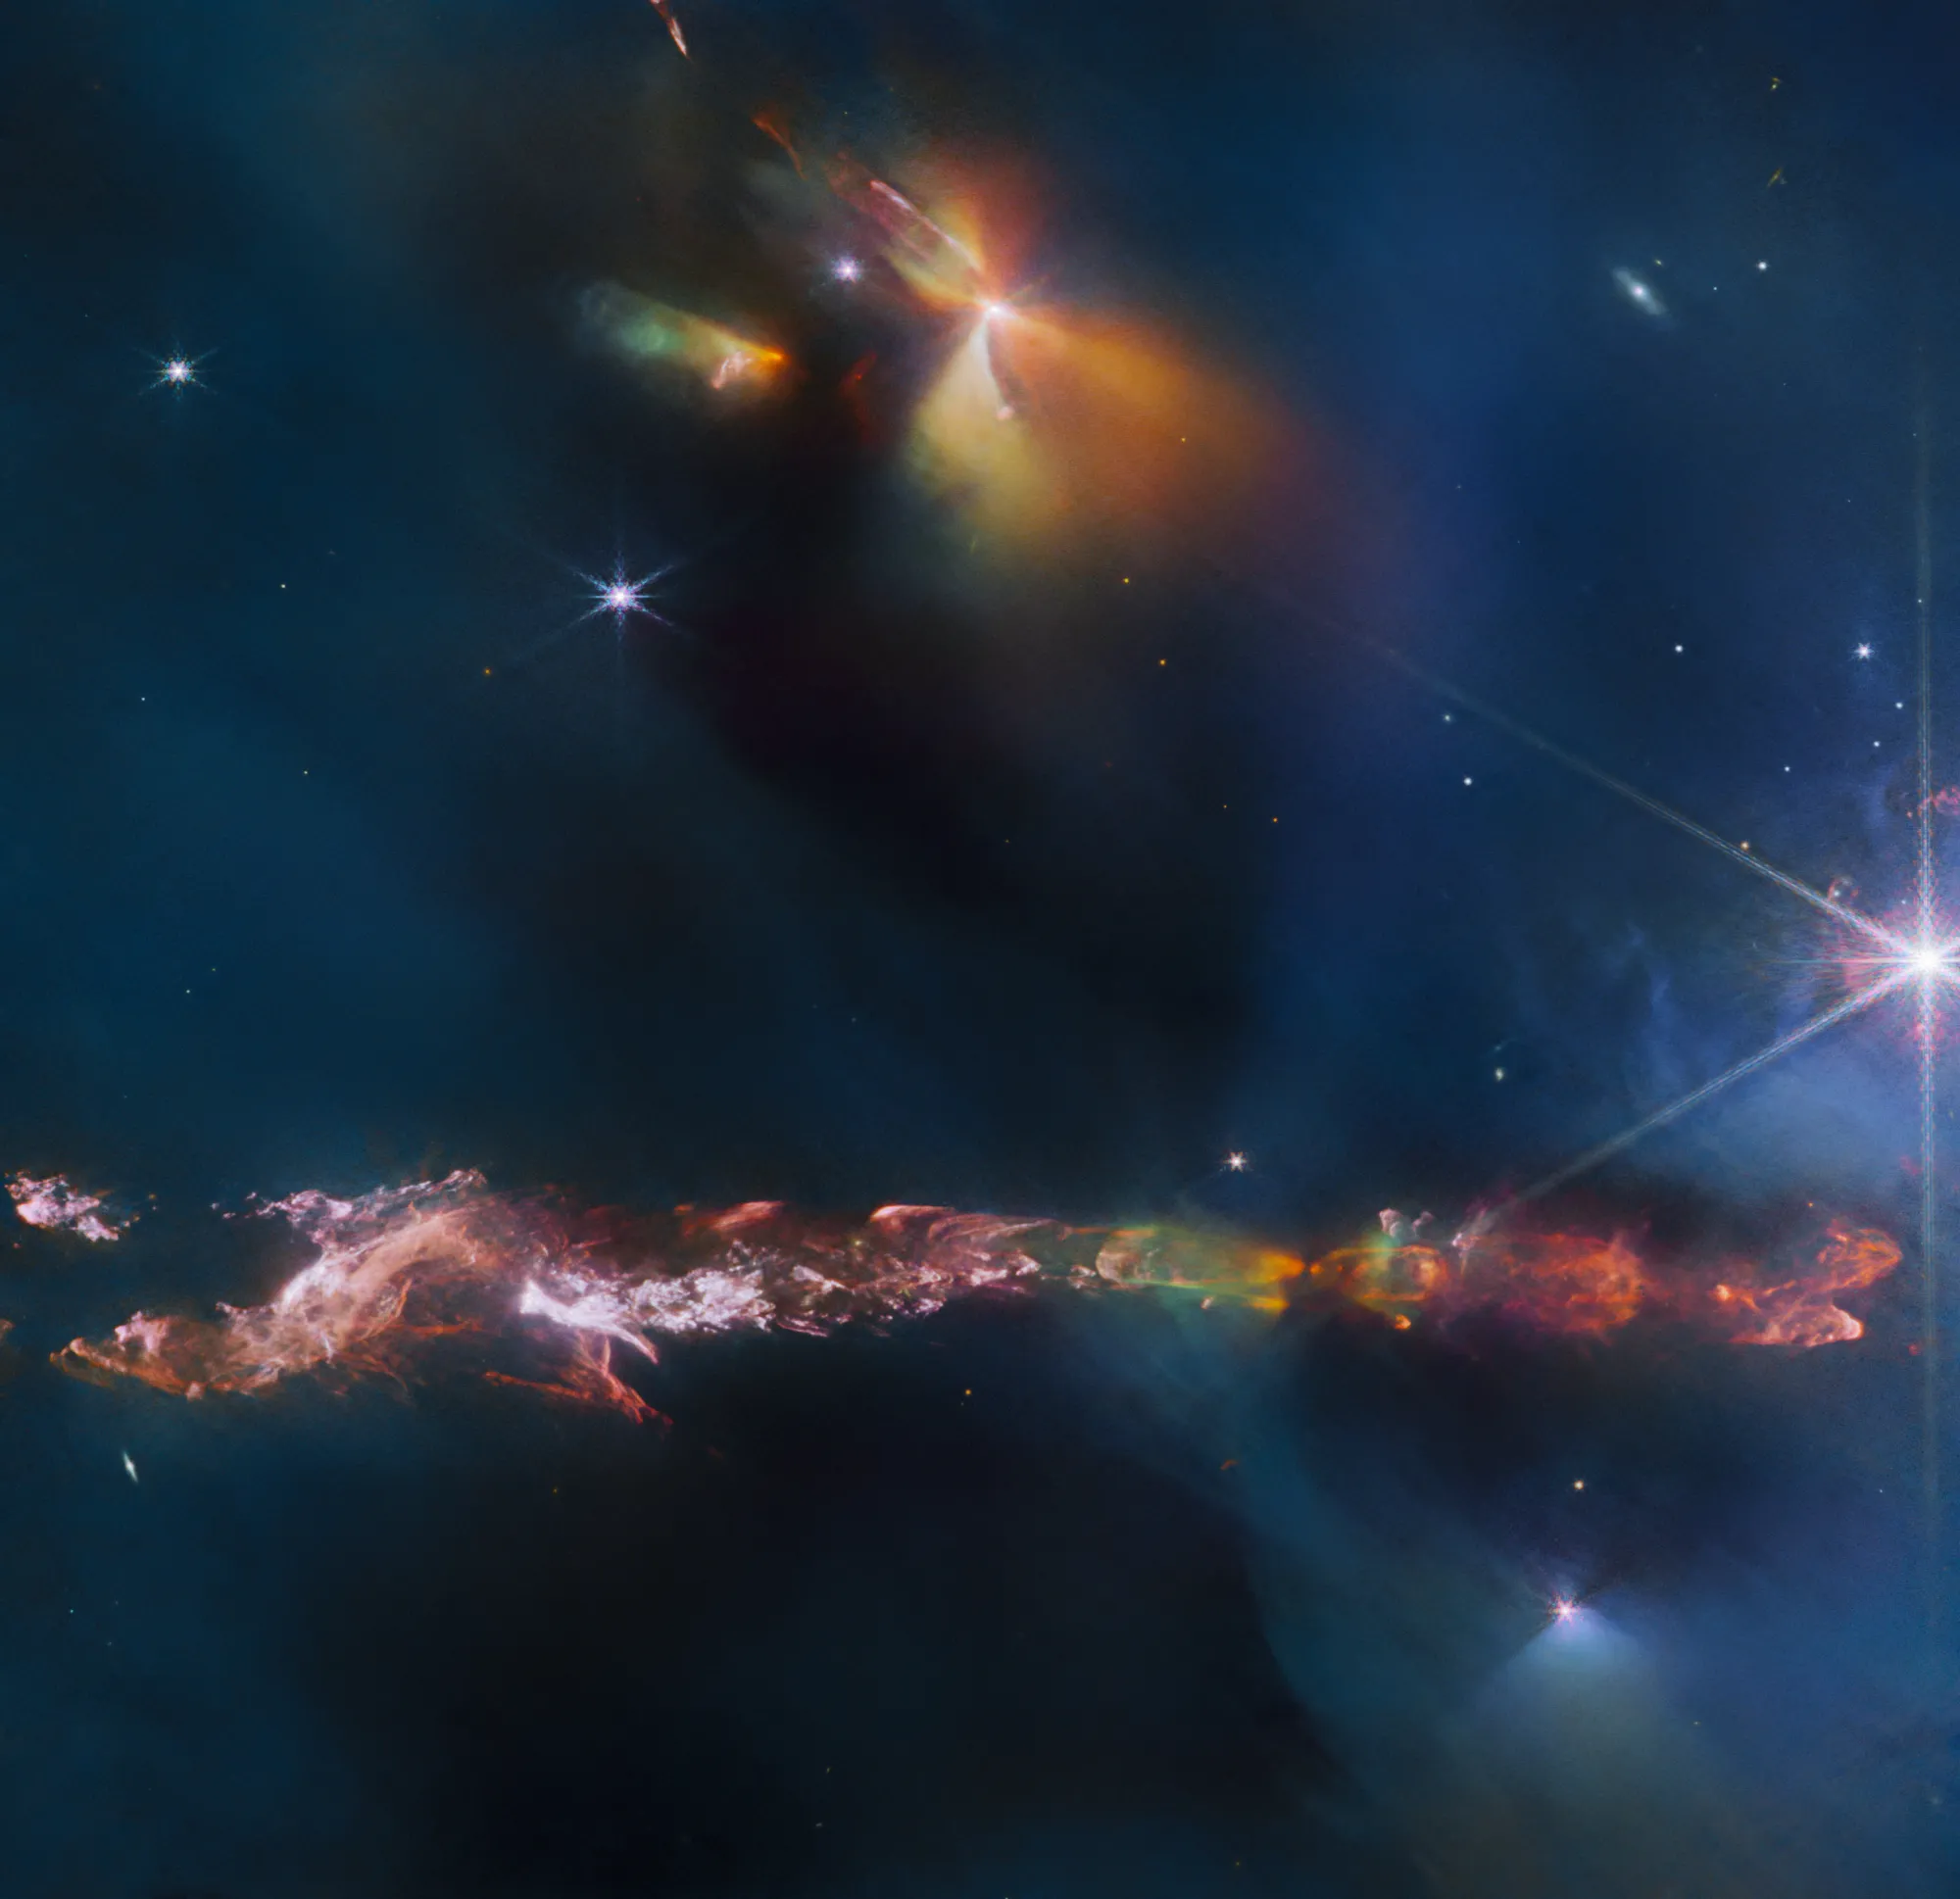 詹姆斯·韦伯太空望远镜拍摄英仙座原恒星赫比格哈罗天体797 (HH 797)的复杂细节